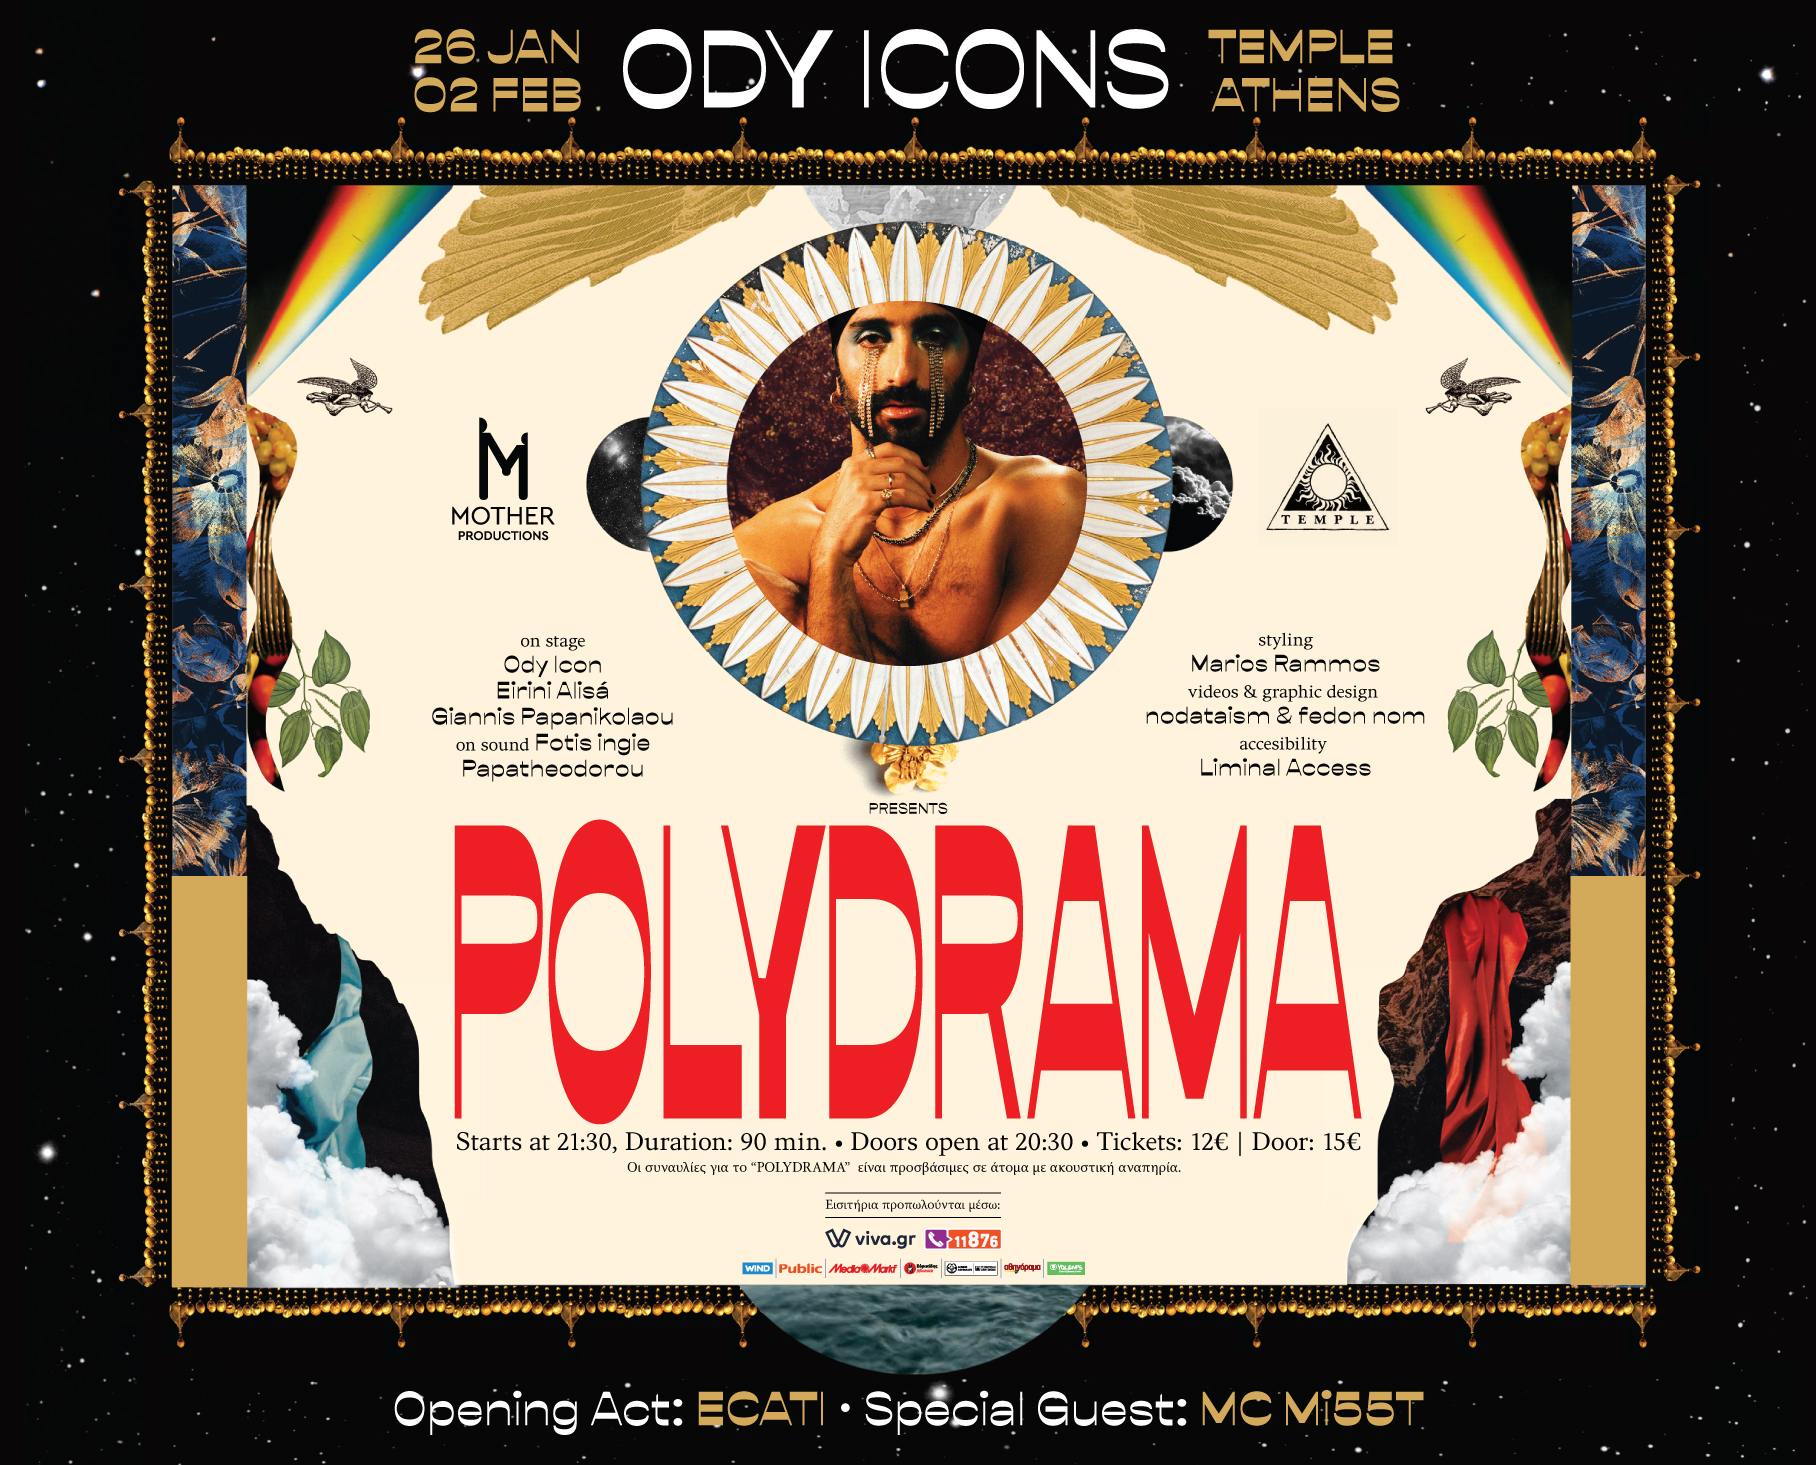 Αφίσα της συναυλίας των ody icons στις 26 Ιανουαρίου και 2 Φεβρουαρίου στο Temple Athens με τίτλο Polydrama. Ανάμεσα σε φολκλορικά γραφιστικά στοιχεία, ξεχωρίζει στο κέντρο το γαλήνιο πρόσωπο του Ody. Σε ένα στρογγυλό πλαίσιο, φαίνεται μόνο το γυμνό μπούστο του Ody με χρυσά κολιέ και χρυσά κοσμήματα κάτω από τα μάτια του που θυμίζουν δάκρια. Ο ίδιος με το χέρι του απαλά ακουμπισμένο κάτω από το πηγούνι του κοιτάζει το φακό με μια έκφραση ήρεμη και αισθησιακή. Με μεγάλους κόκκινες χαρακτήρες από κάτω αναγράφεται Polydrama.